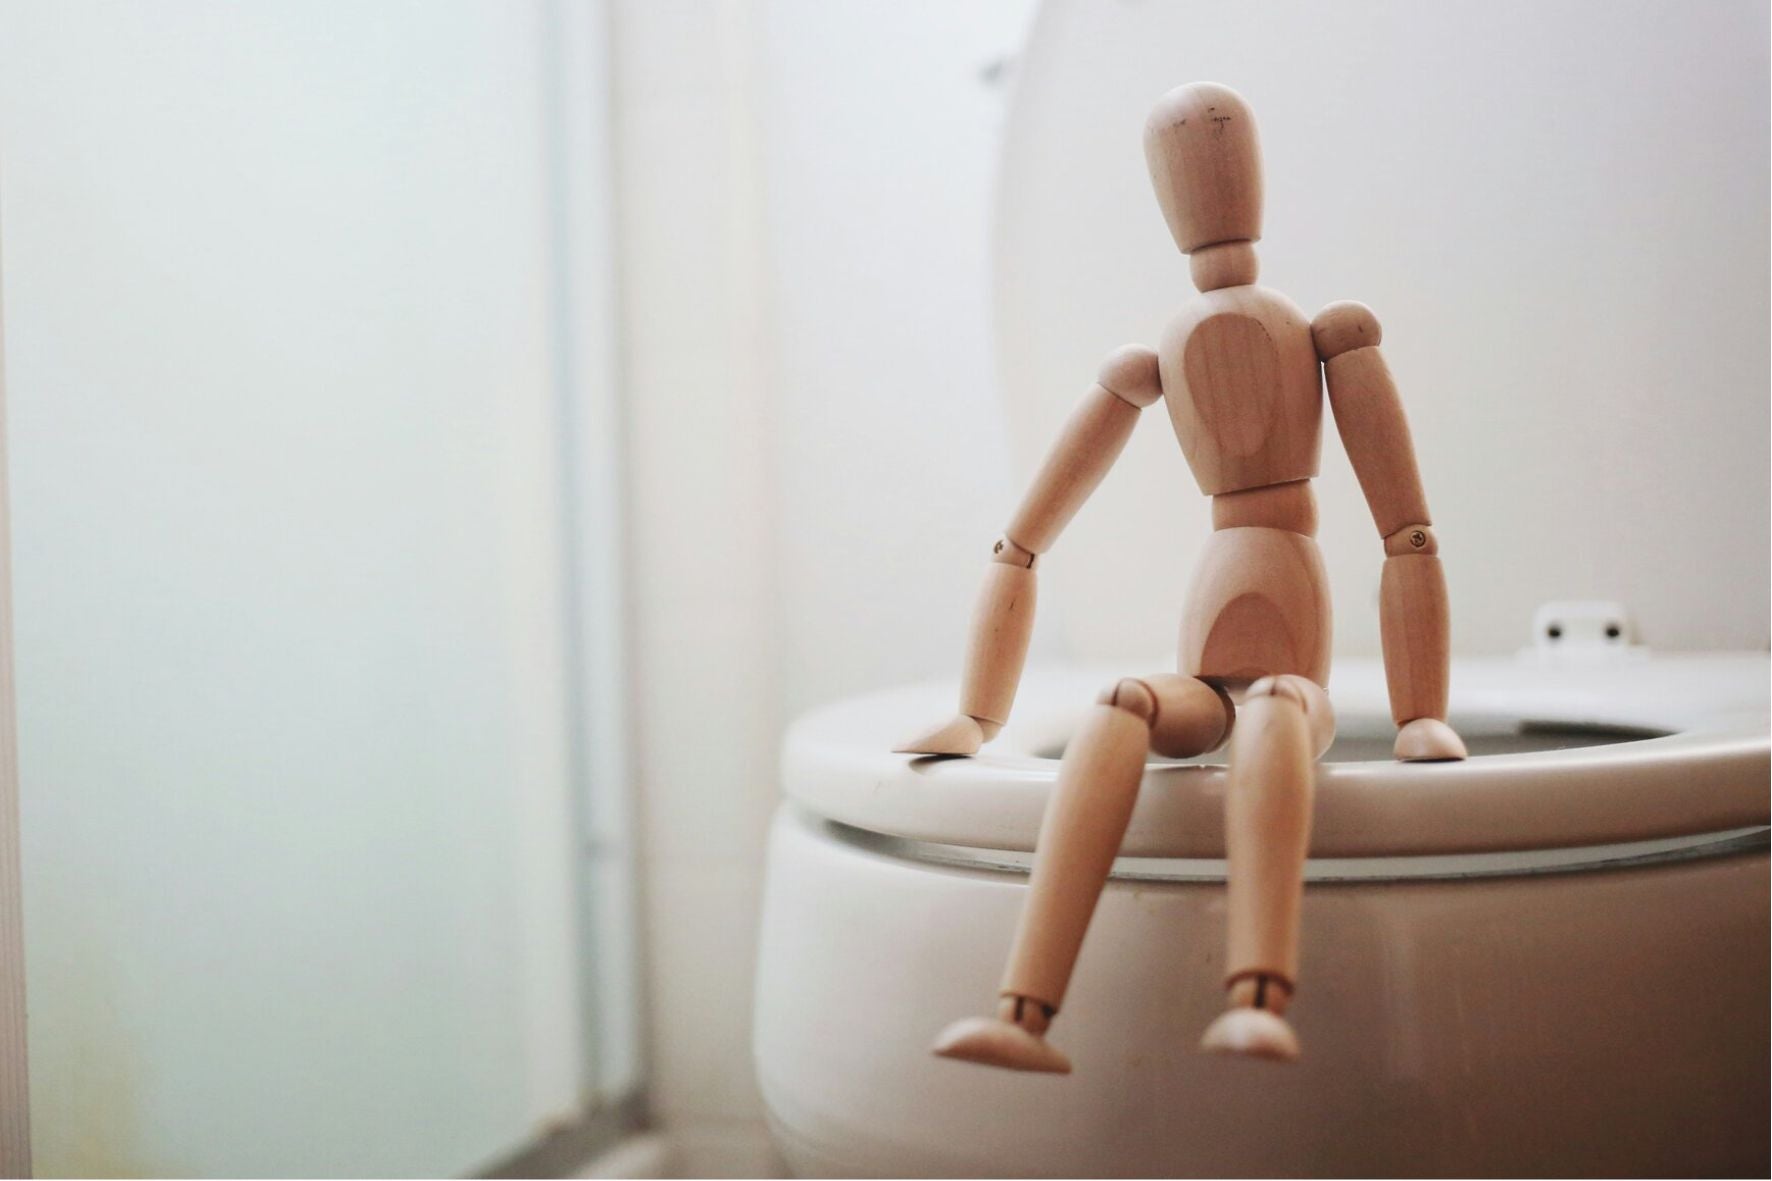 Une figurine articulée en bois assise sur la toilette comme symbole des lochies et des fuites urinaires postpartum.